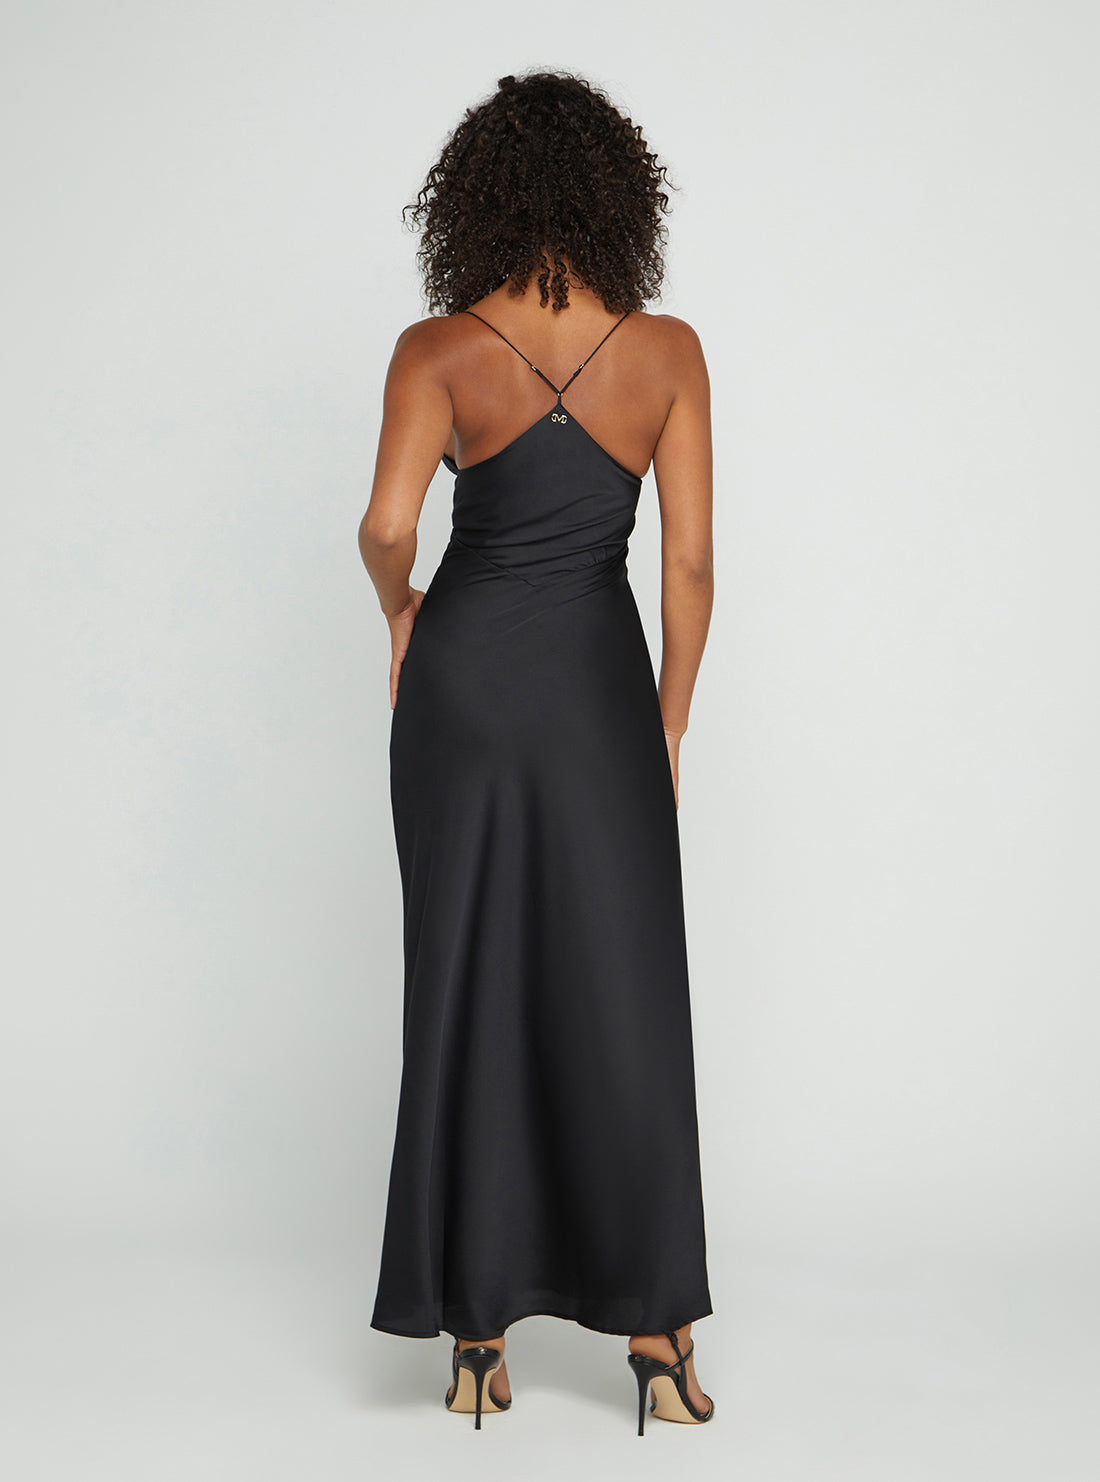 GUESS Women's Marciano Black Anita Maxi Dress Back View